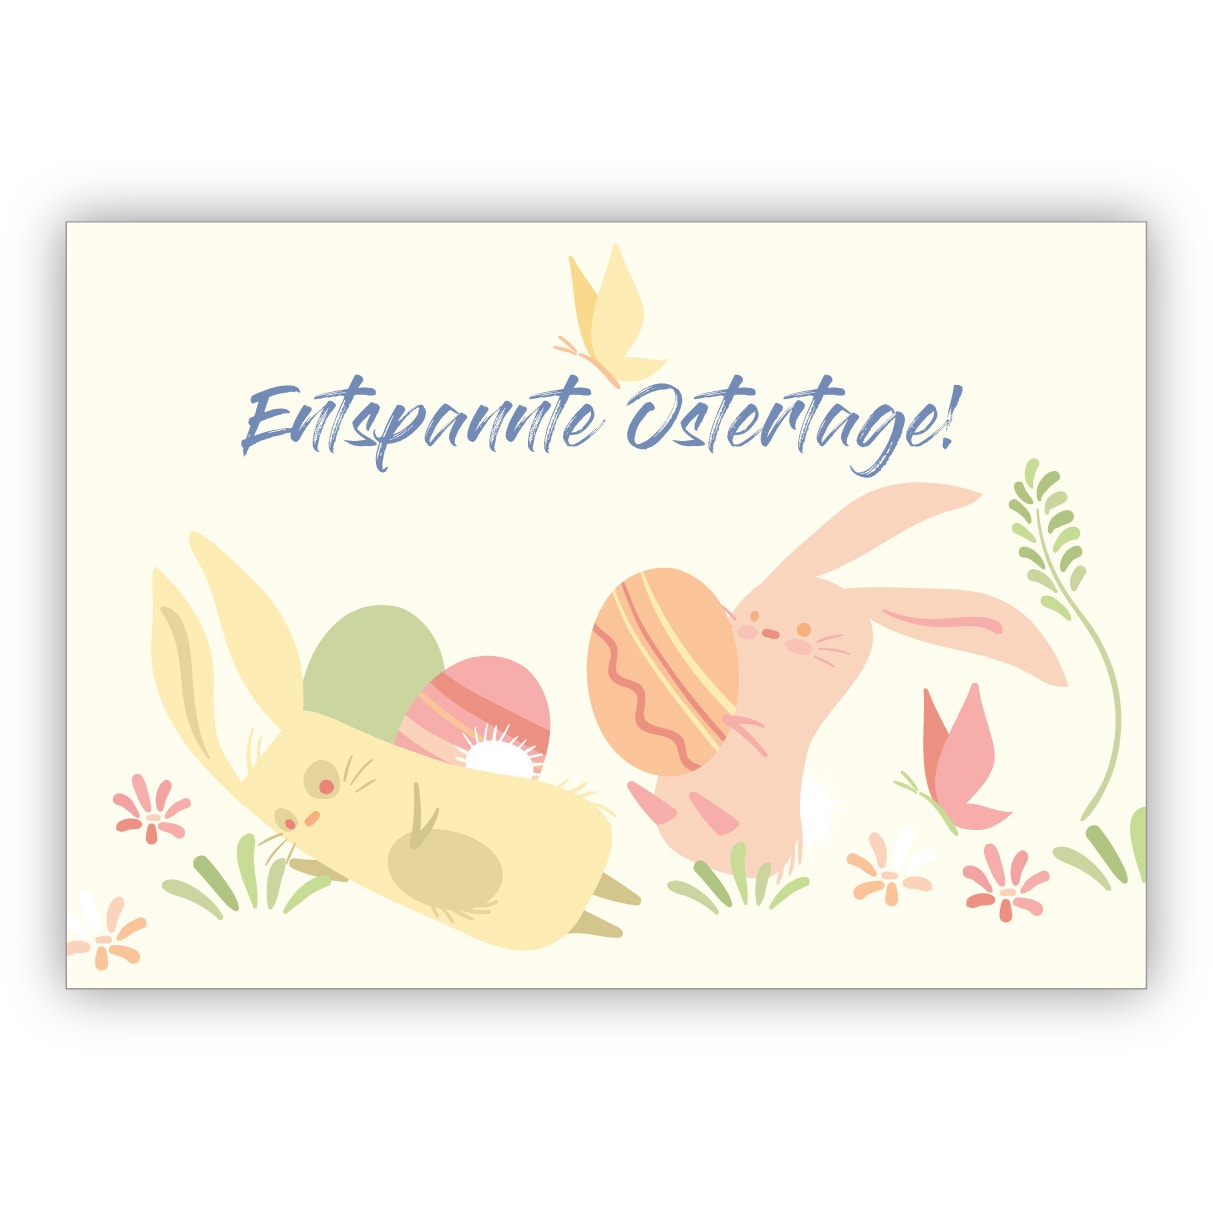 Fröhliche Osterkarte mit Hasen bei der Ostereier-Suche: Entspannte Ostertage!